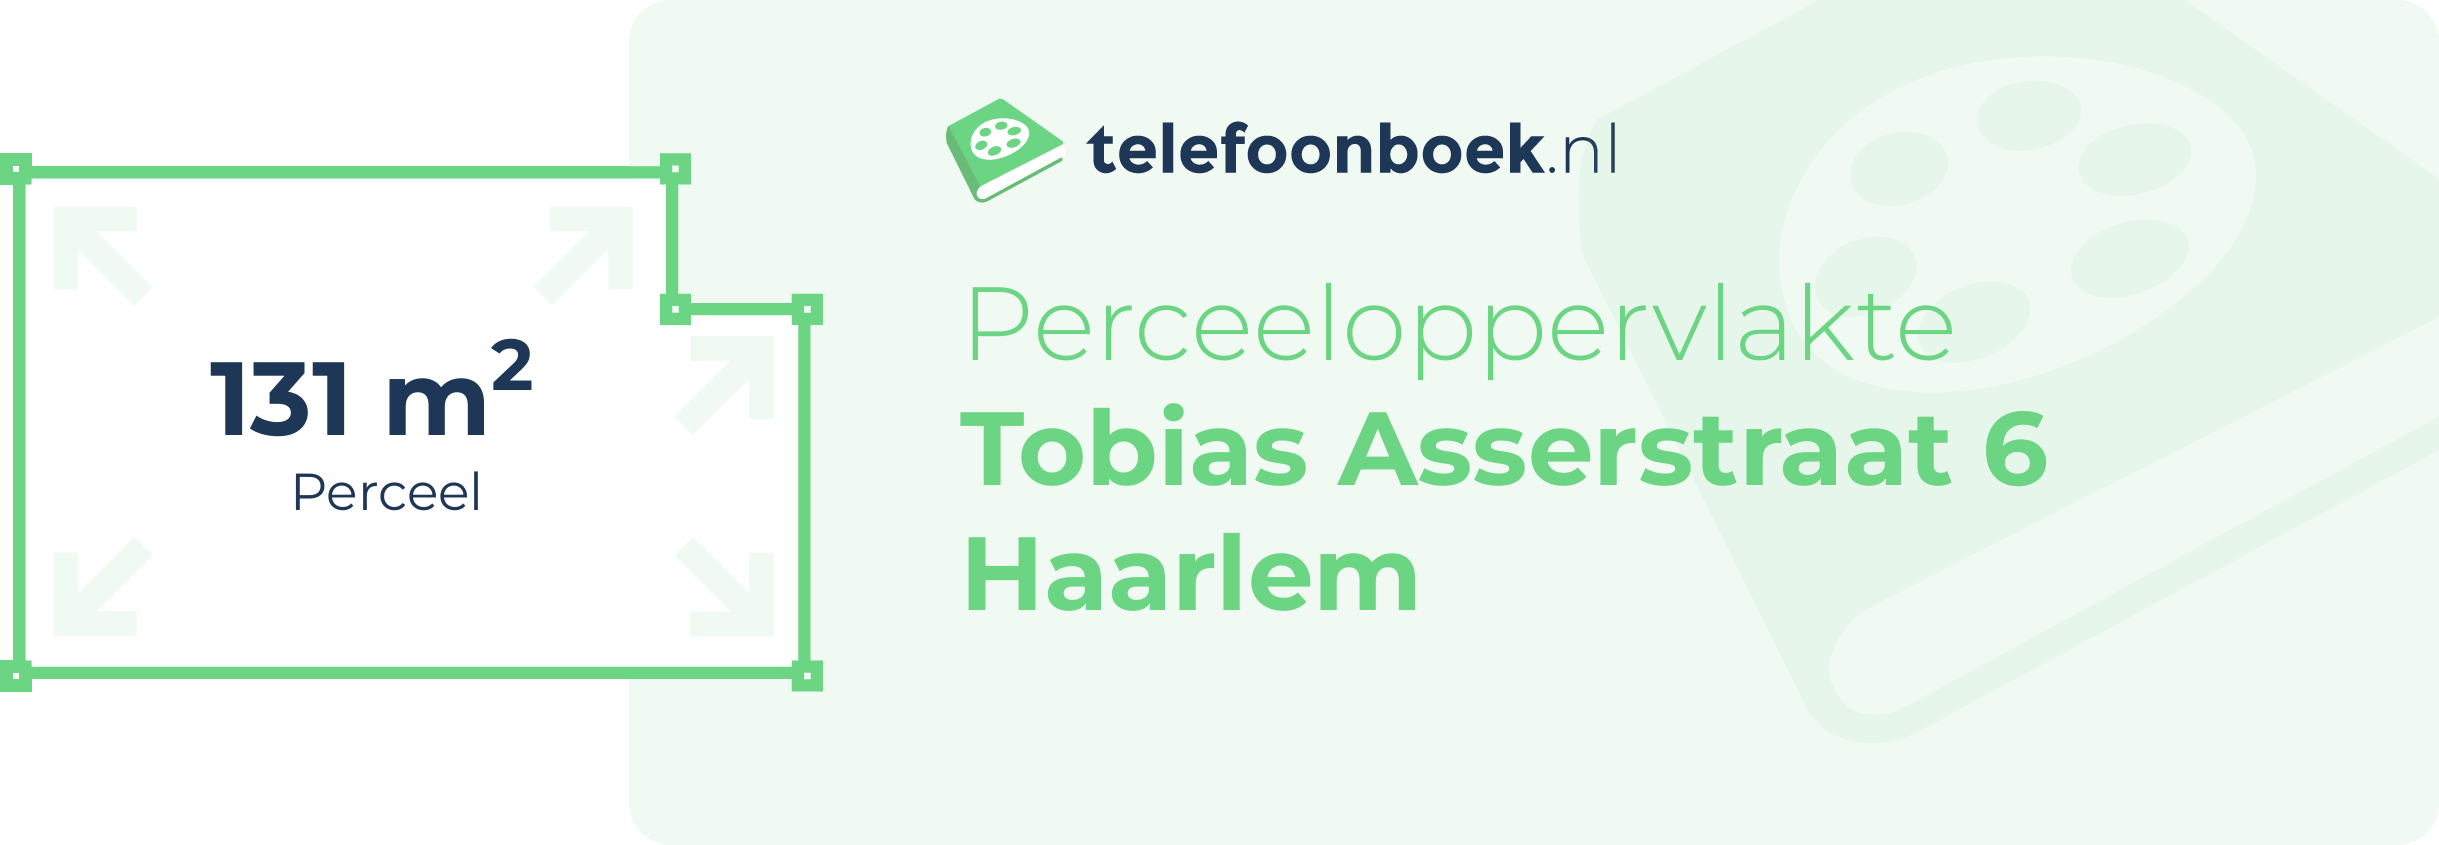 Perceeloppervlakte Tobias Asserstraat 6 Haarlem